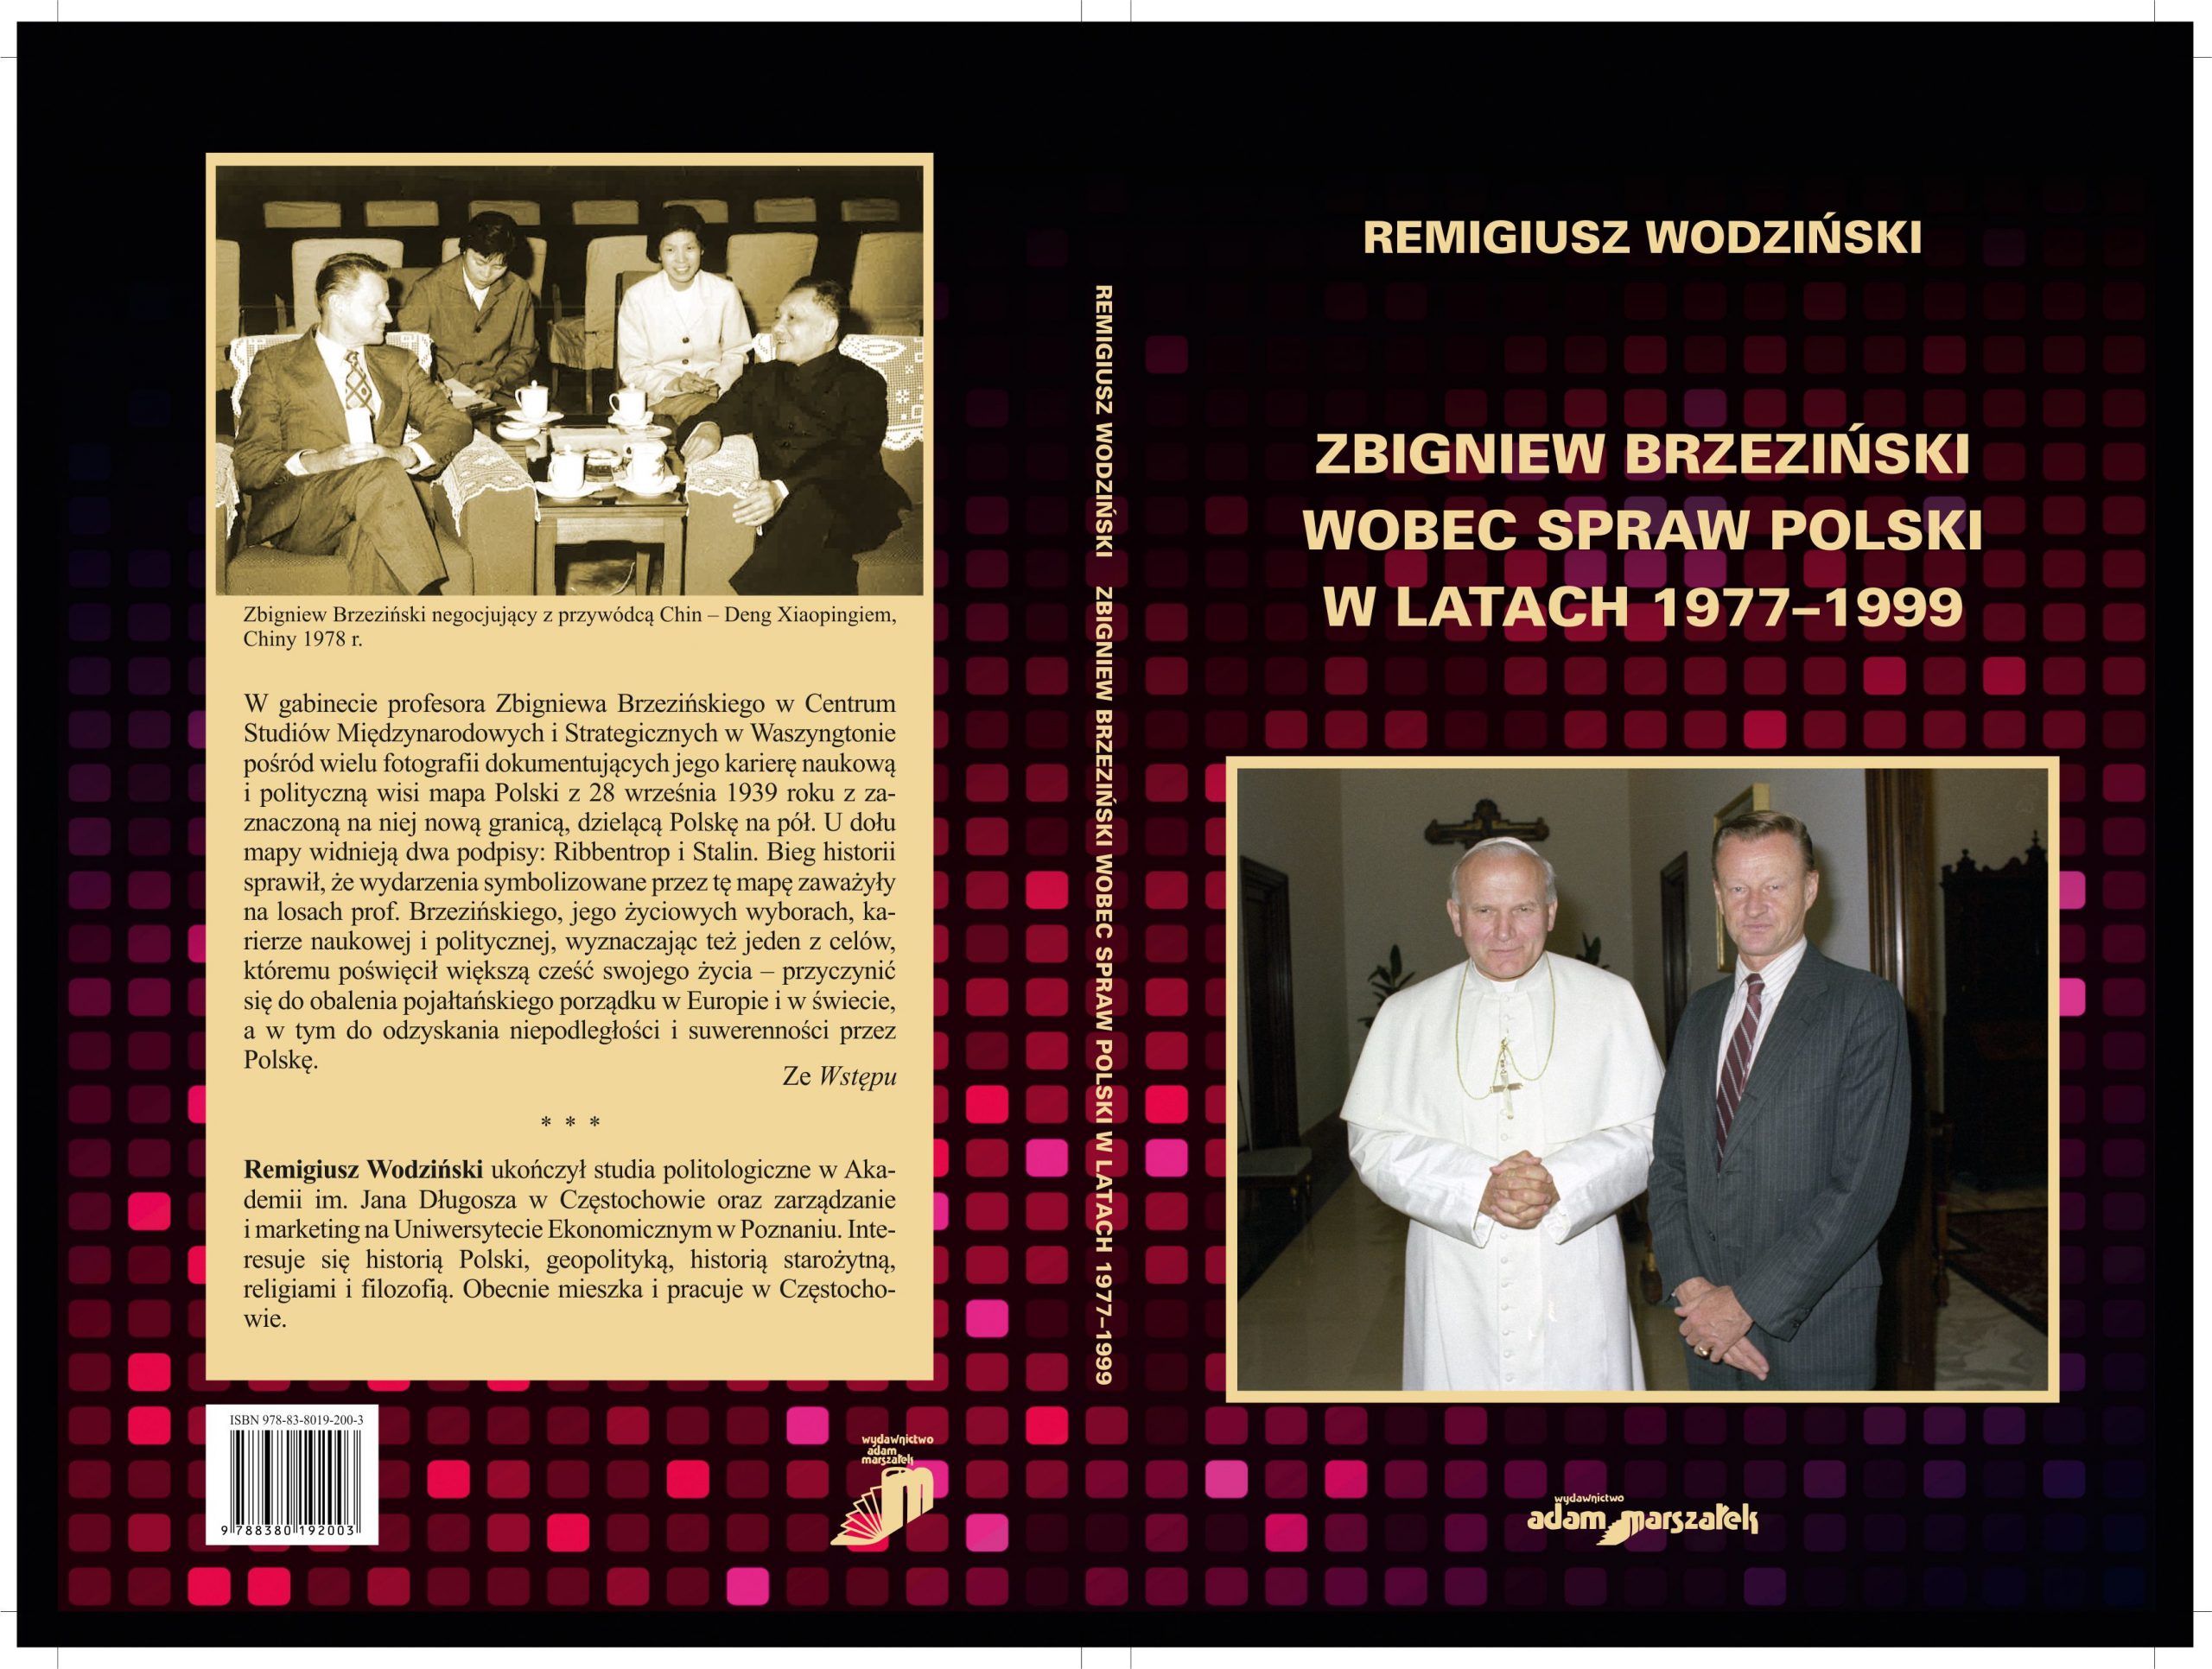 Remigiusz Wodziński: Zbigniew Brzeziński wobec spraw Polski [zaproszenie na wykład]